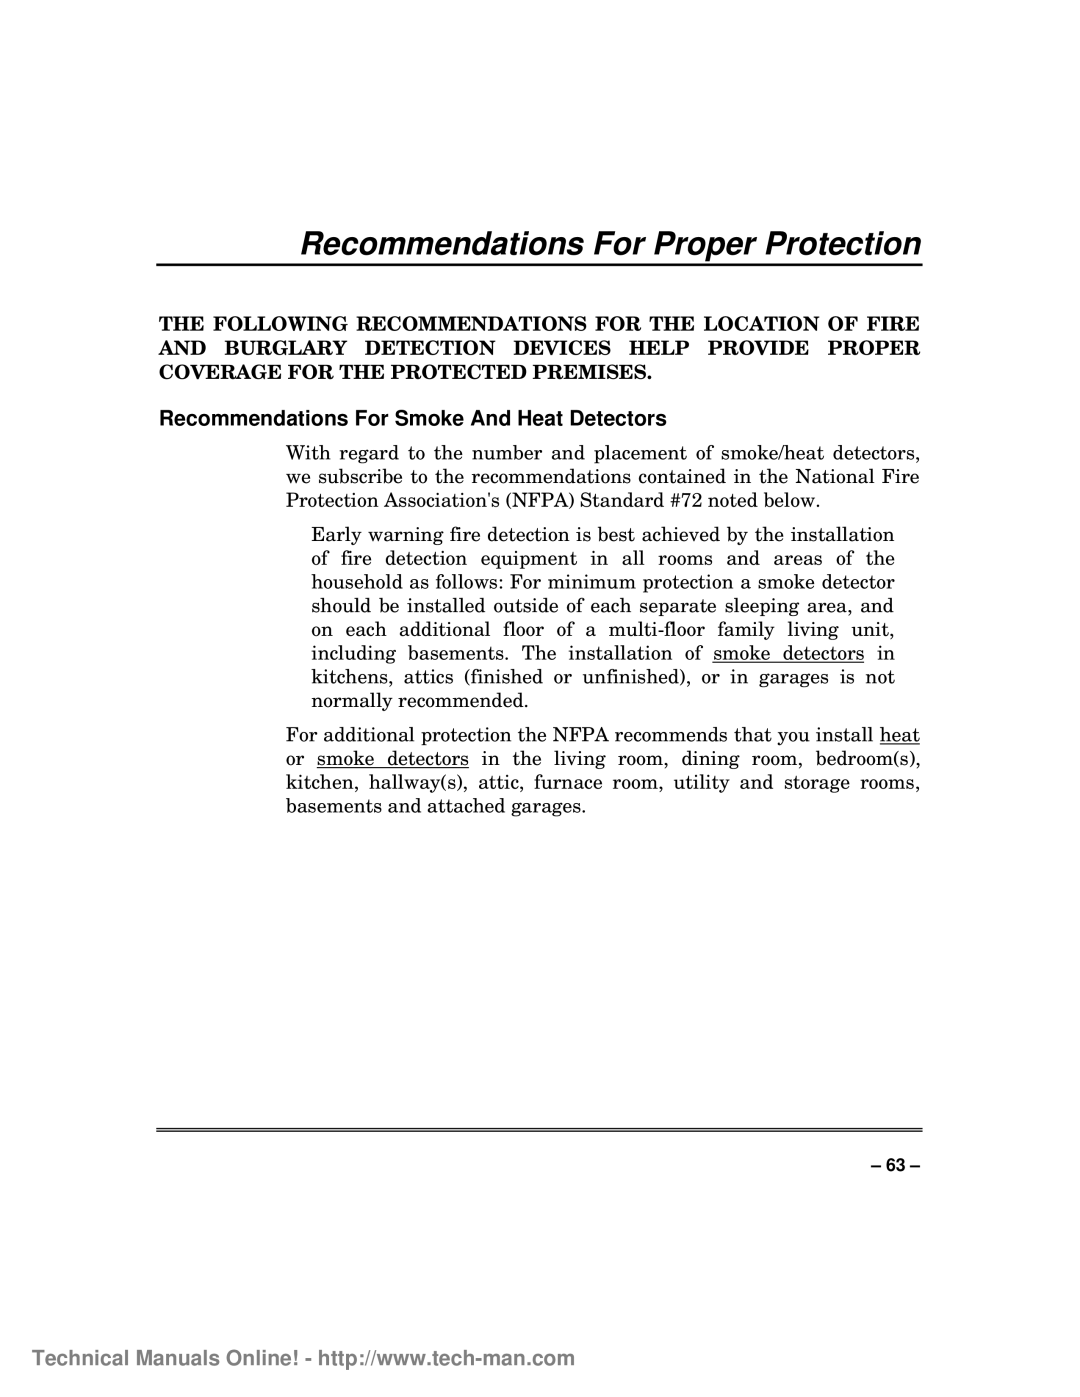 First Alert FA1600C/CA/CB, fa1600c Recommendations For Proper Protection, Recommendations For Smoke And Heat Detectors 